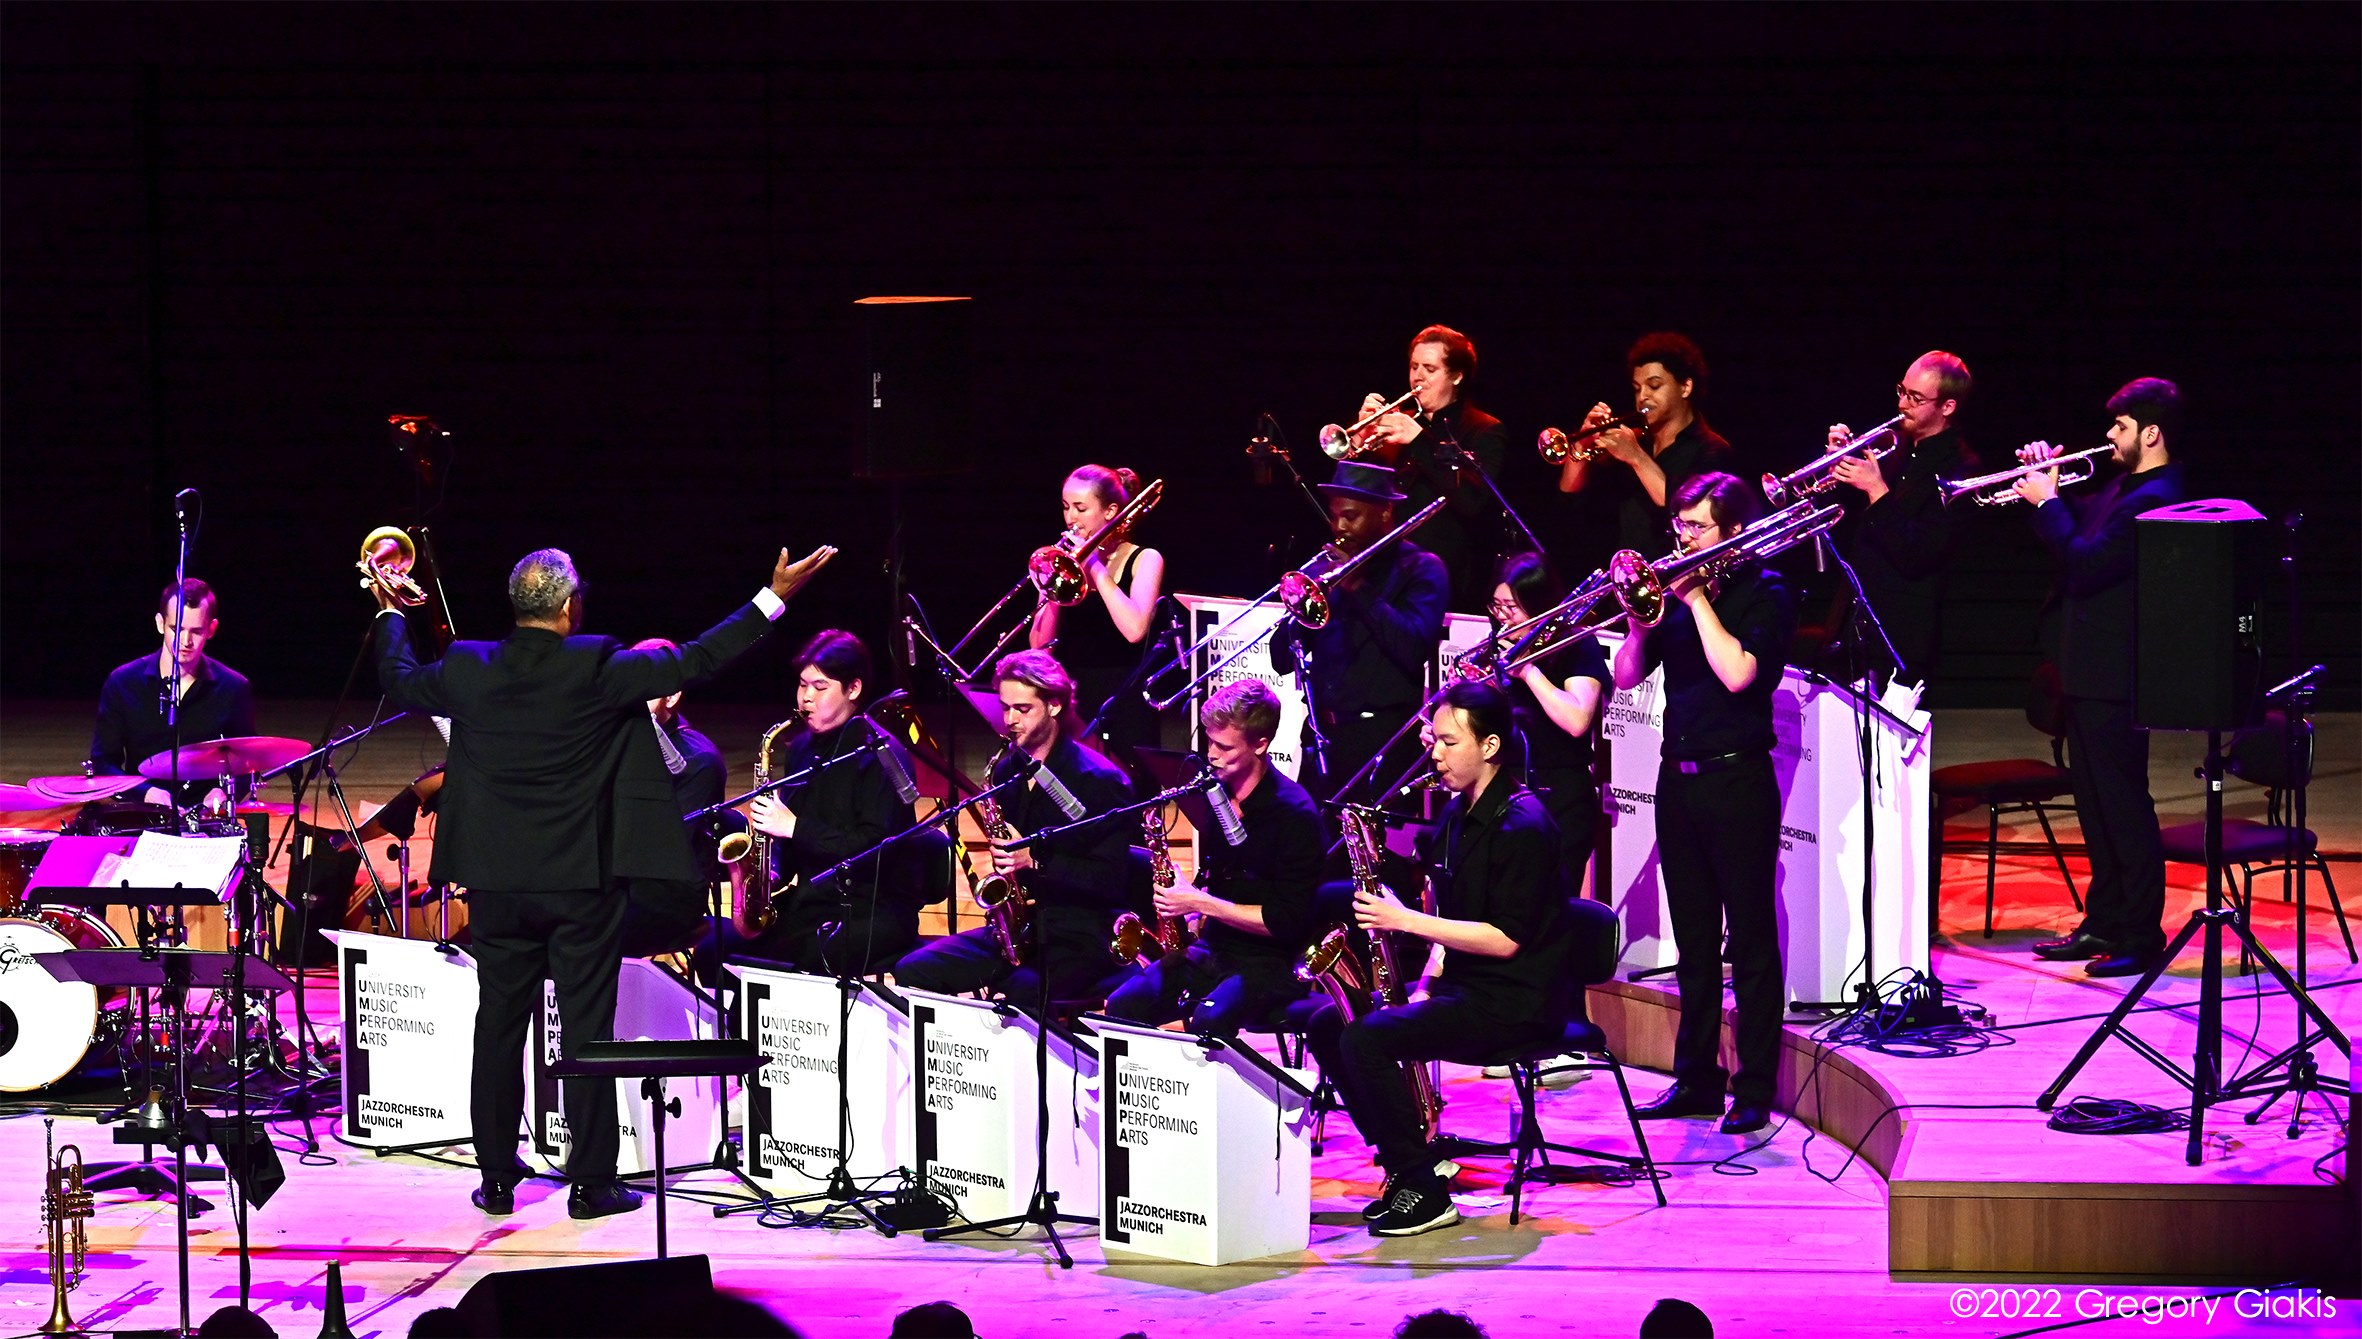 Jazz-Musiker*innen der Hochschule für Musik und Theater München sind auf der lila bestrahlten Bühne der Isarphilharmonie zu sehen, wie sie musizieren.